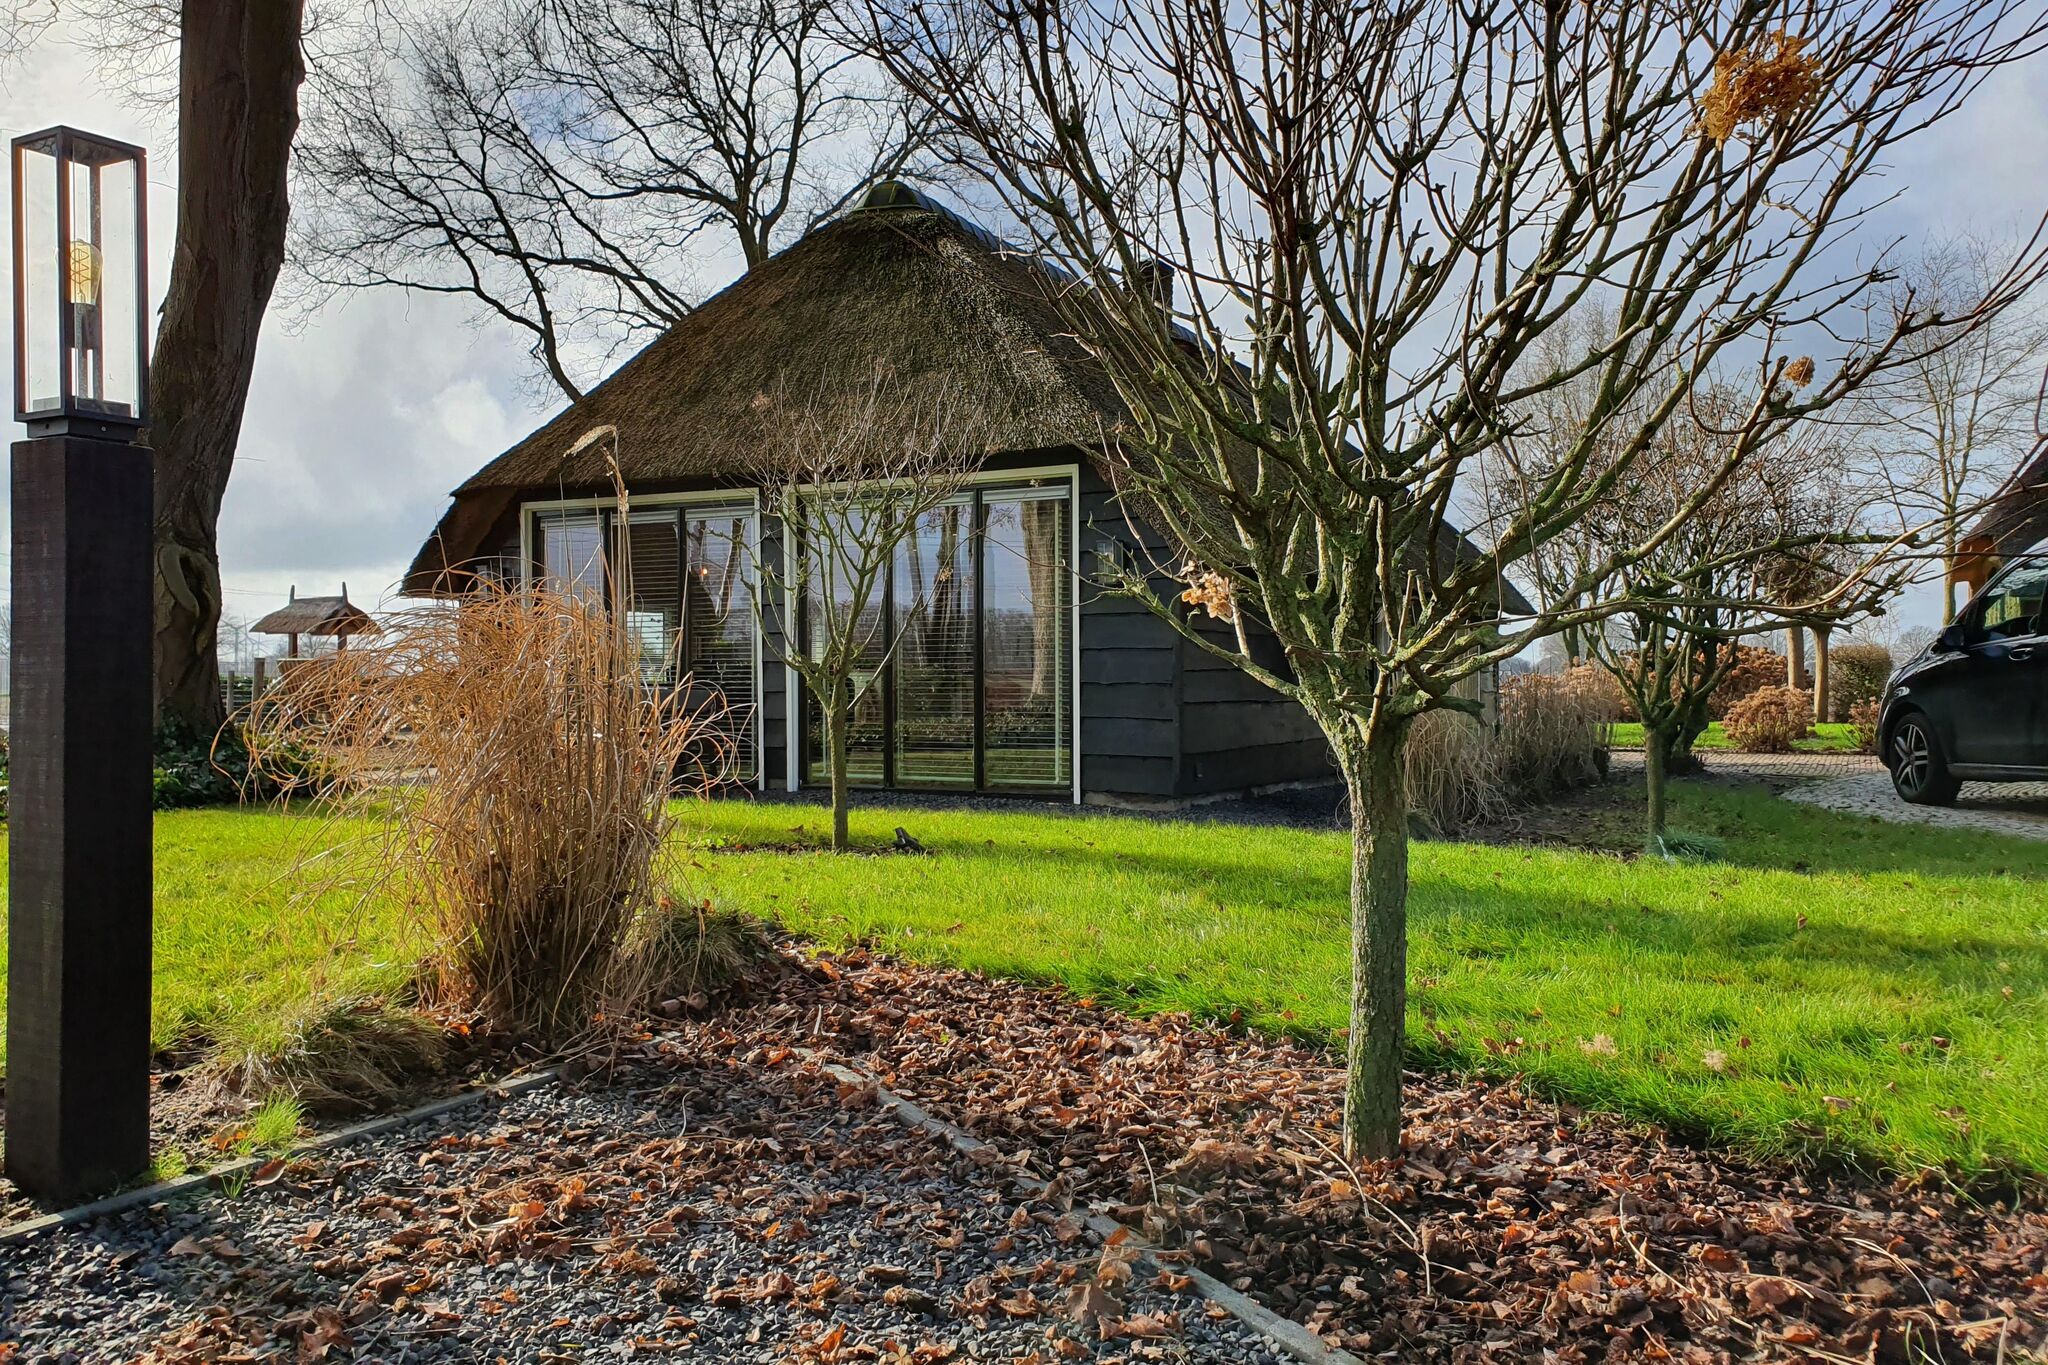 Vakantiewoning Heeresteeg in Nieuwleusen met tuin